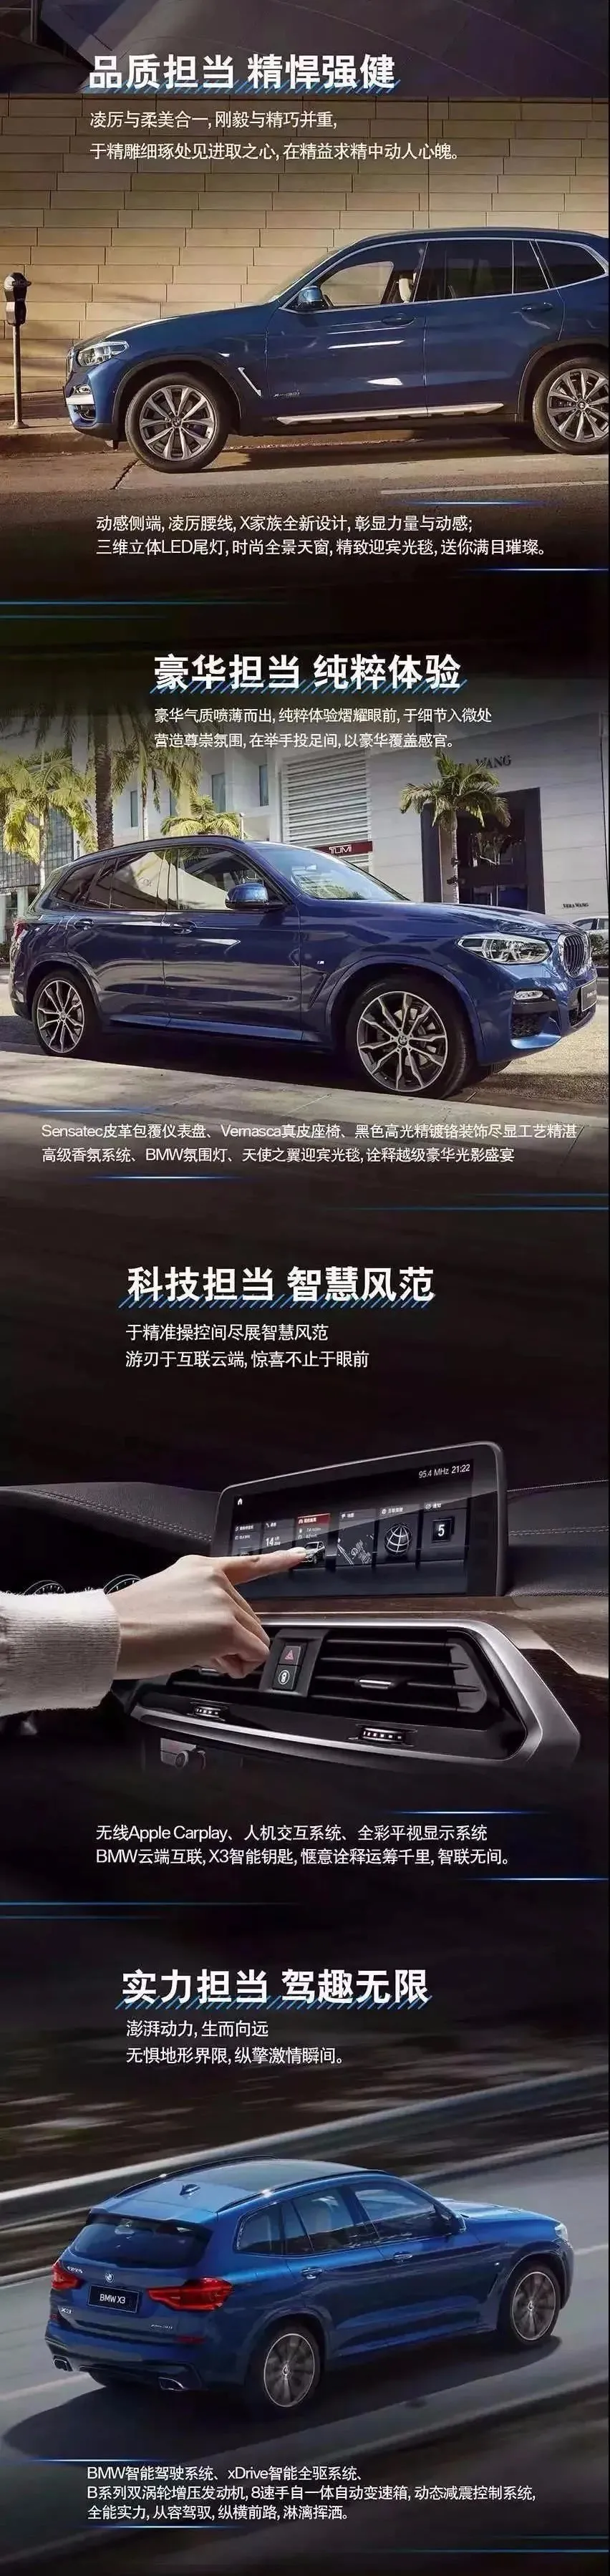 科技创新 |台州力宝行BMW X3新天地展示活动即将开启